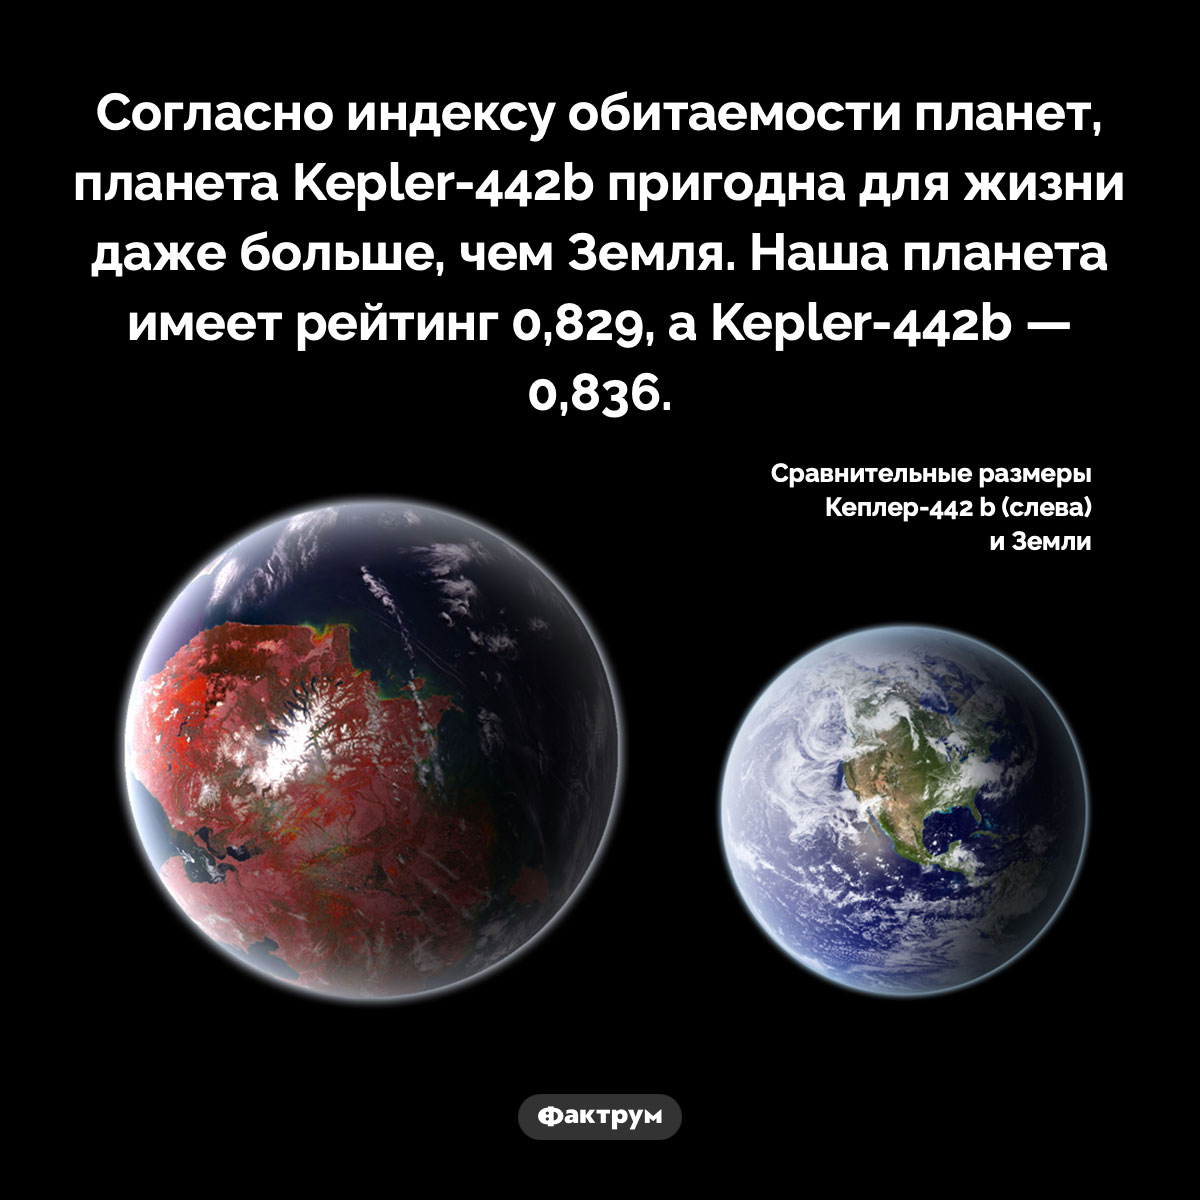 Kepler-442b — лучшая планета для жизни. Согласно индексу обитаемости планет, планета Kepler-442b пригодна для жизни даже больше, чем Земля. Наша планета имеет рейтинг 0,829, а как Kepler-442b — 0,836.